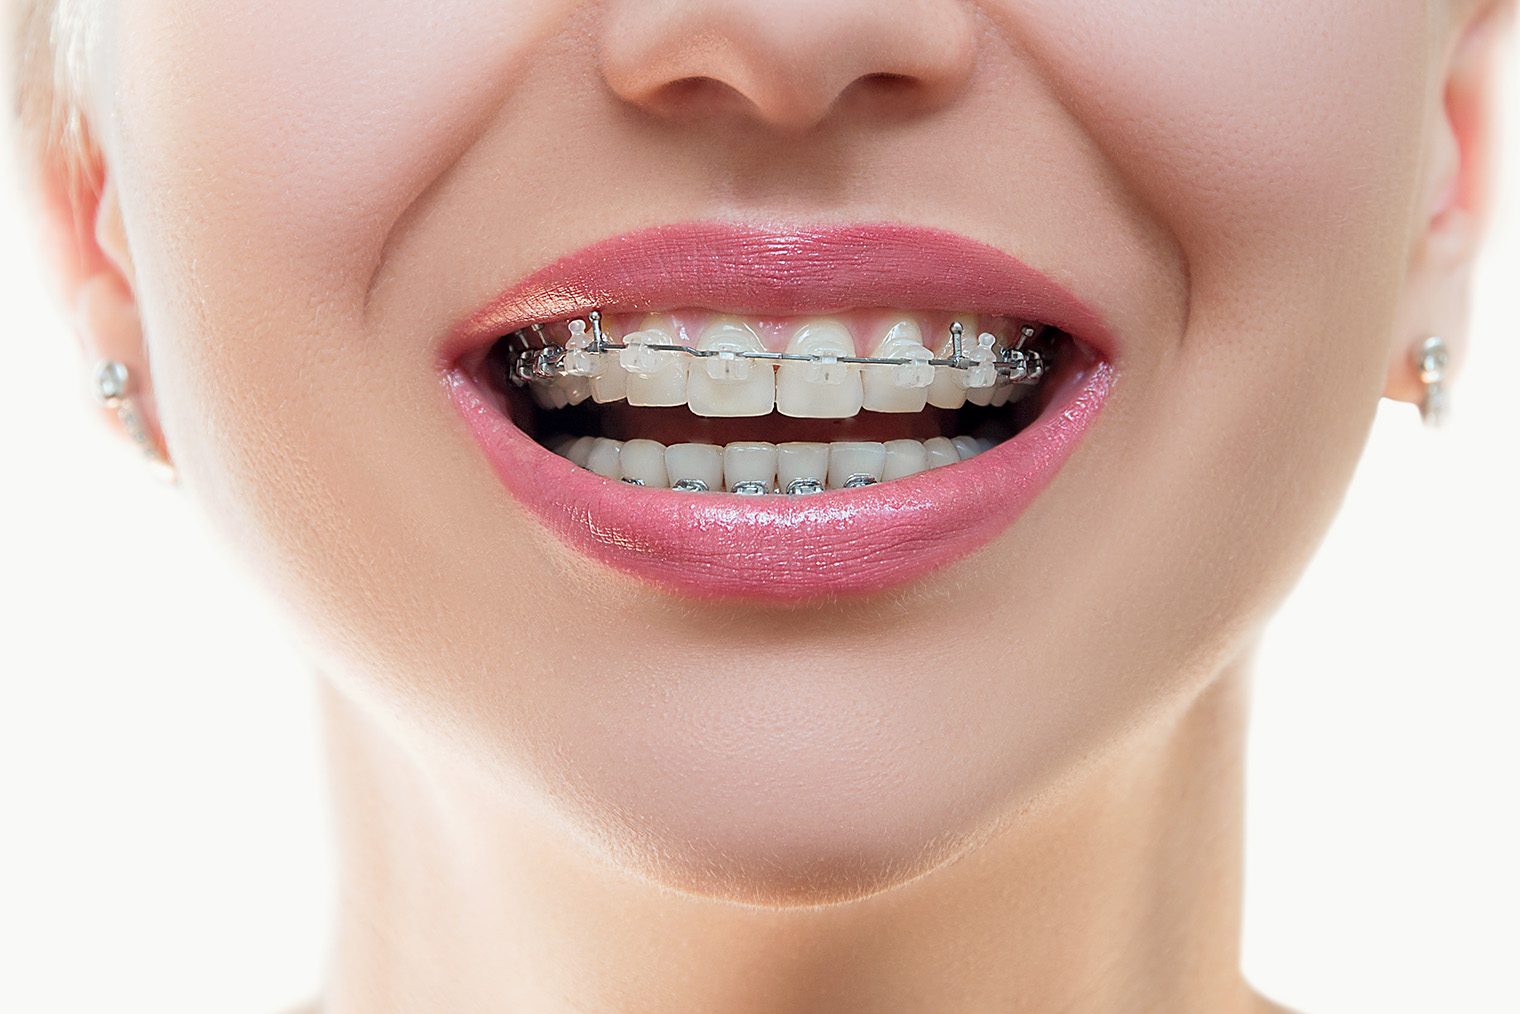 Керамические брекеты все⁠-⁠таки меньше заметны на зубах. Фотография: Alexis C / Shutterstock / FOTODOM